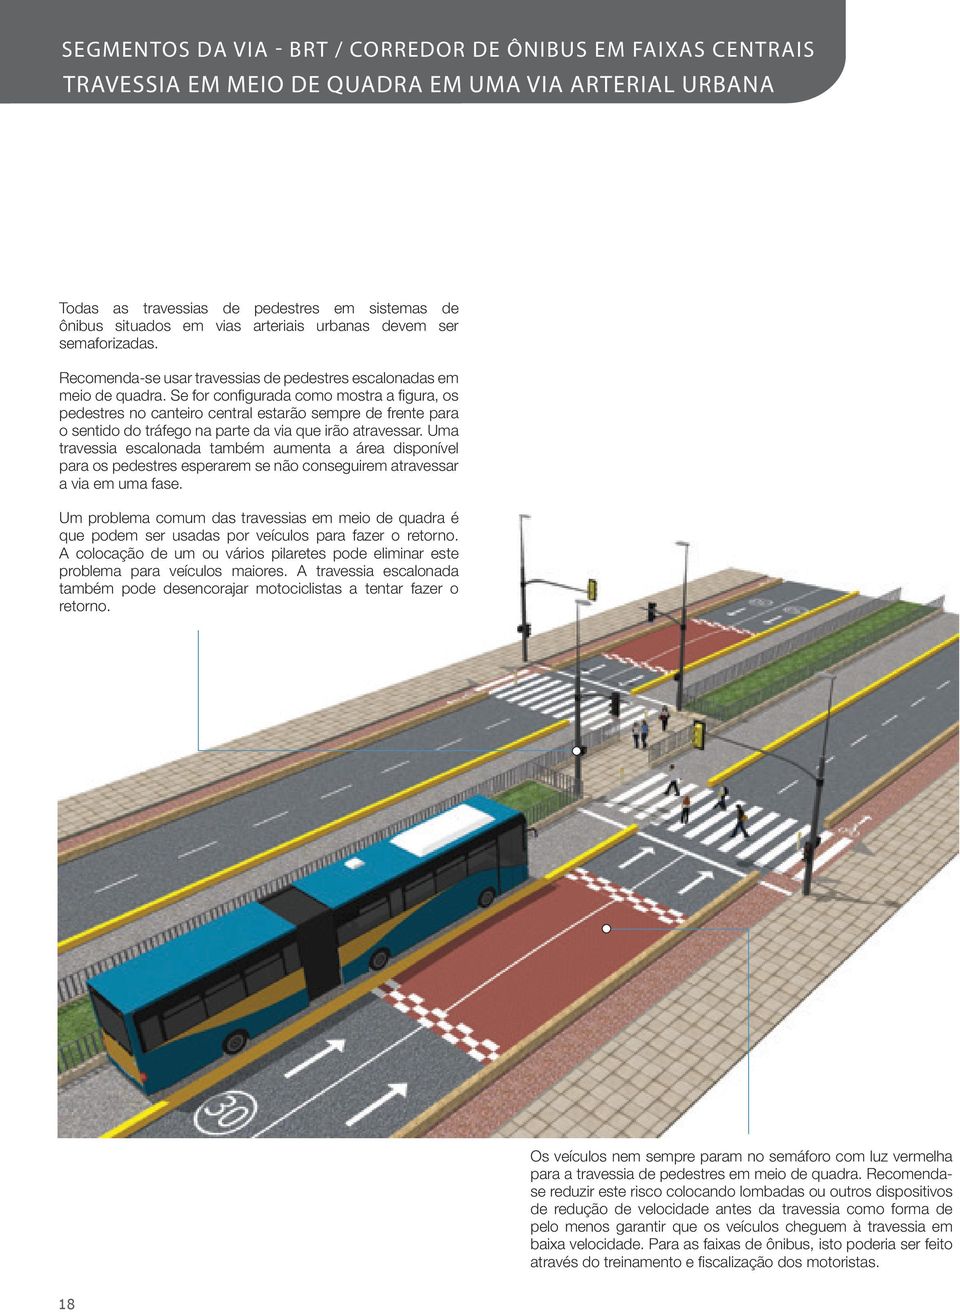 Se for configurada como mostra a figura, os pedestres no canteiro central estarão sempre de frente para o sentido do tráfego na parte da via que irão atravessar.